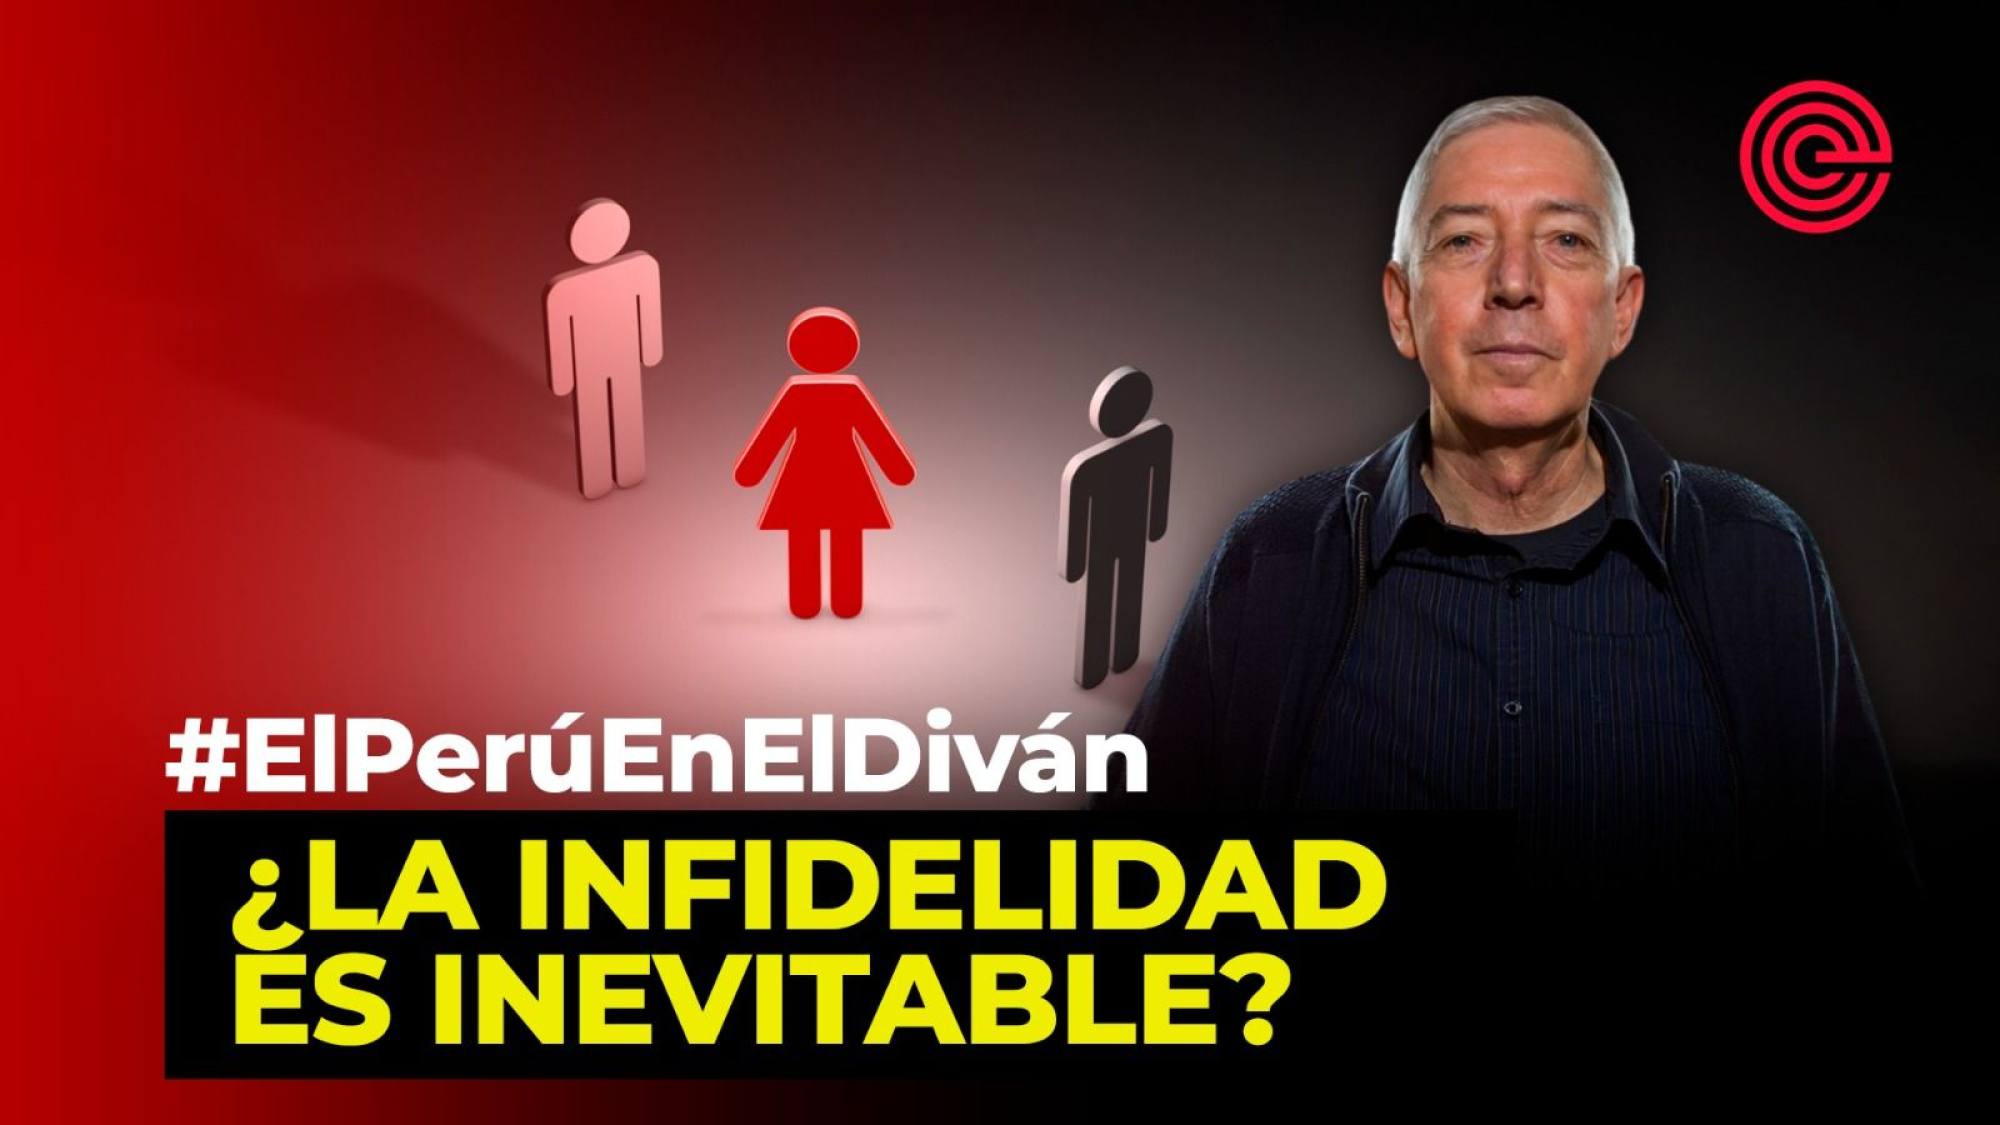 ¿La infidelidad es inevitable?, Epicentro TV